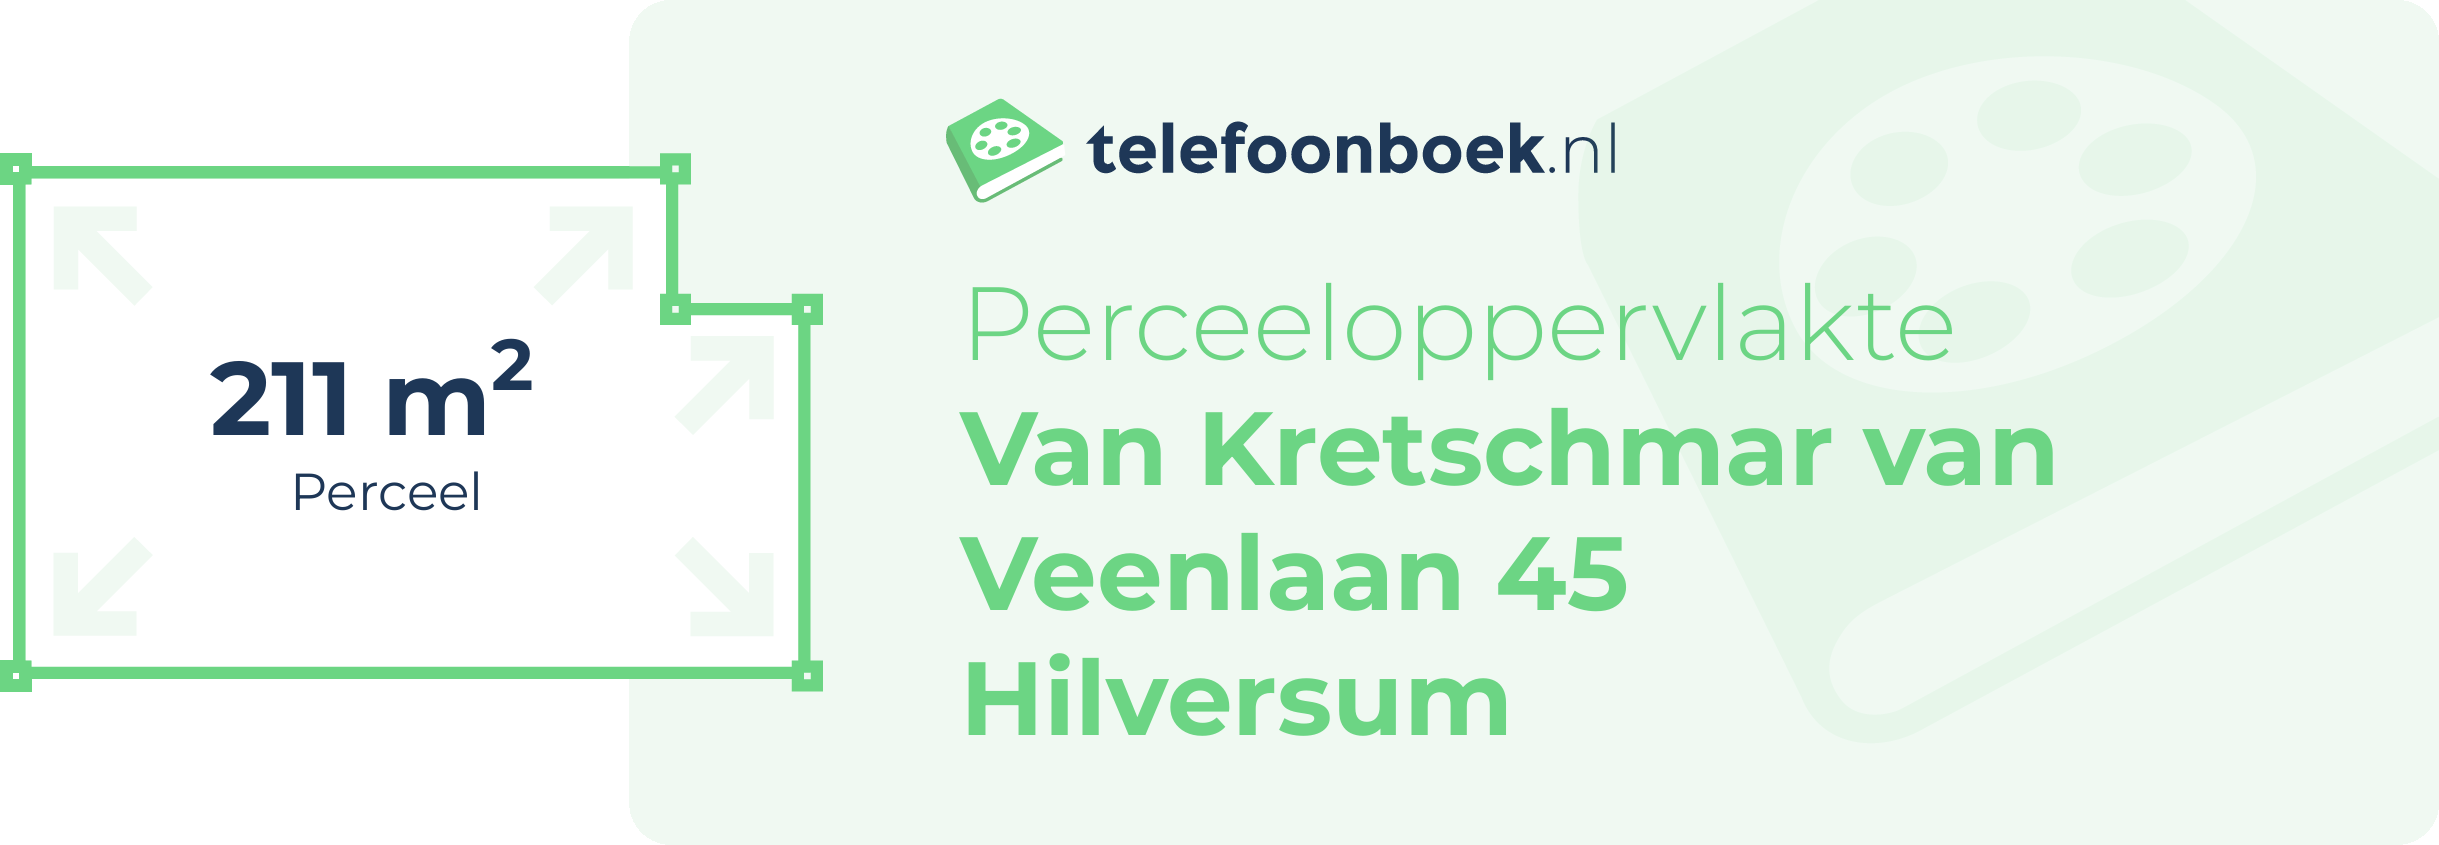 Perceeloppervlakte Van Kretschmar Van Veenlaan 45 Hilversum